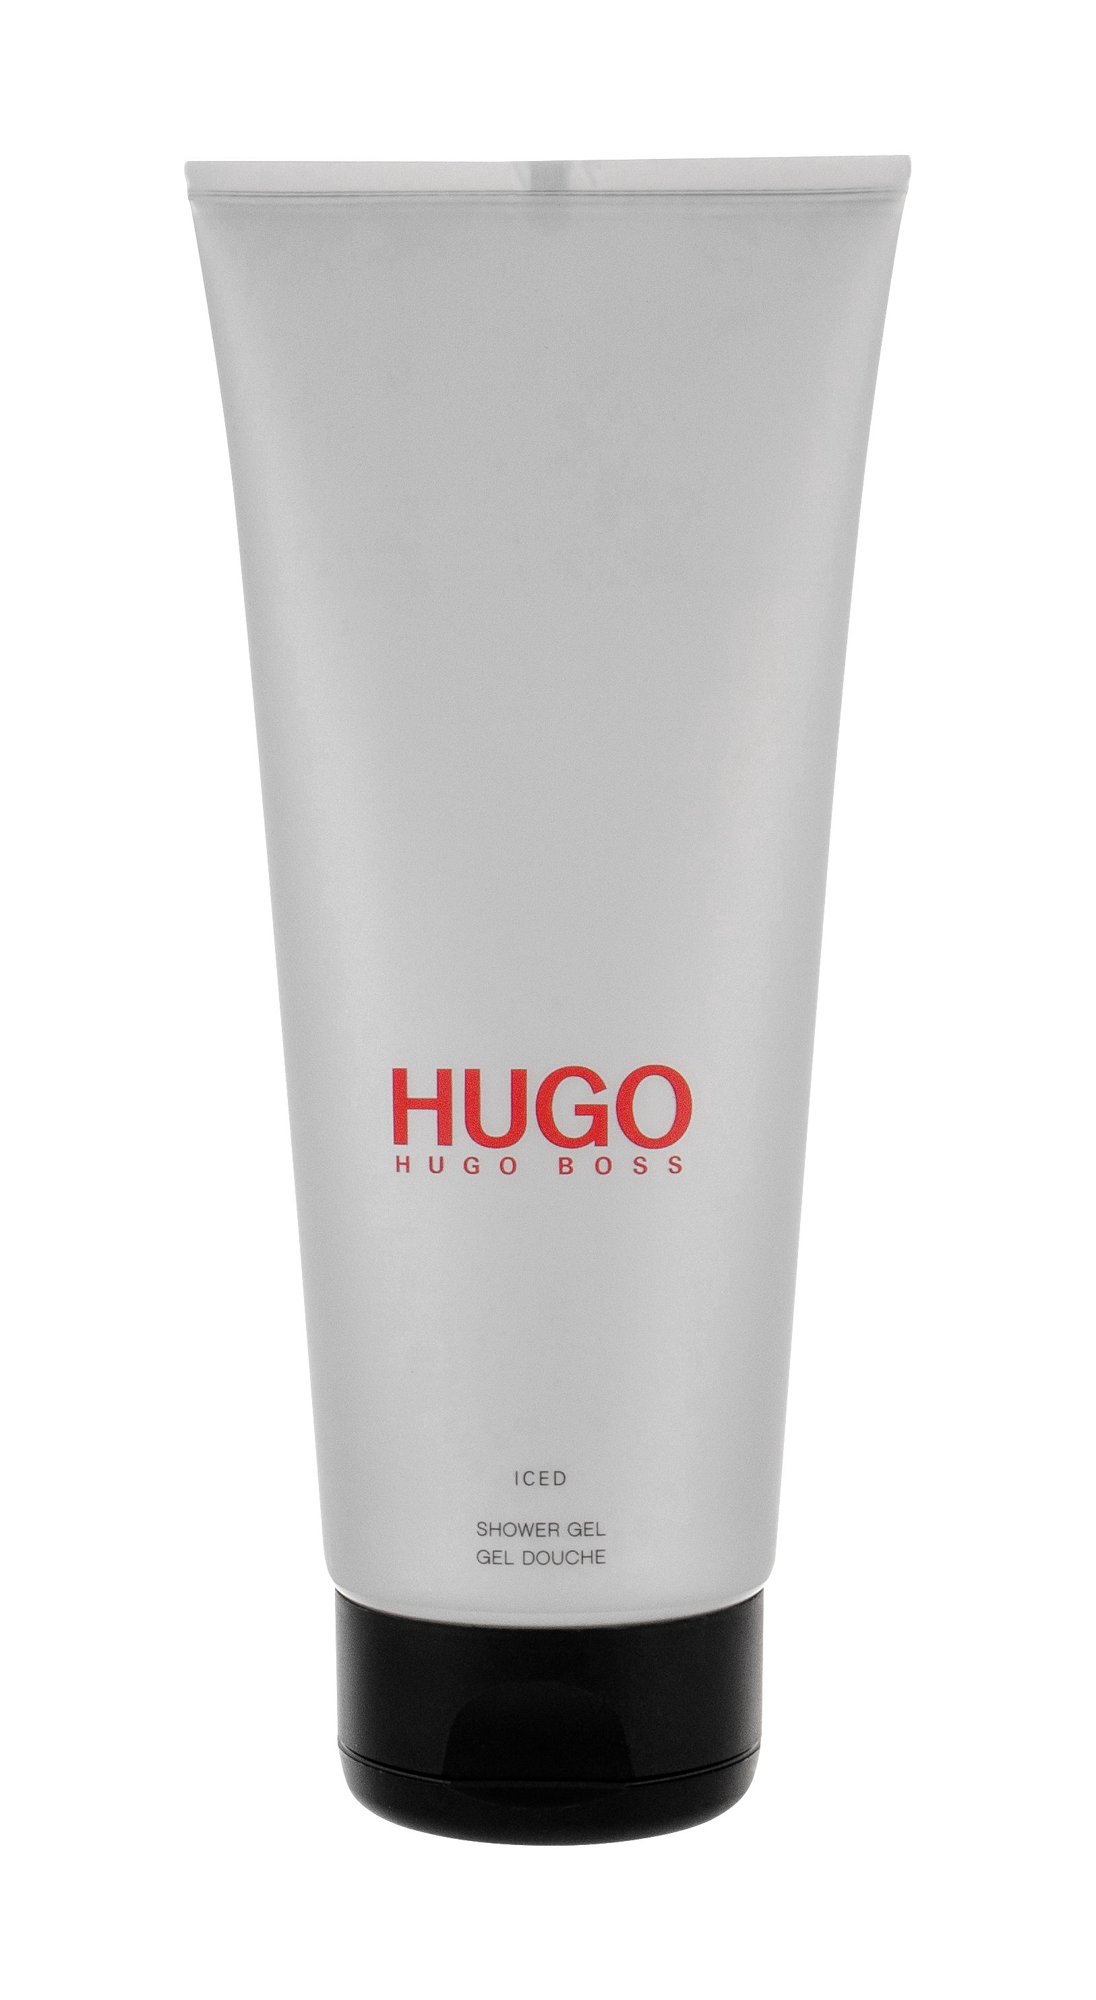 HUGO BOSS Hugo Iced, tusfürdő gél 200ml